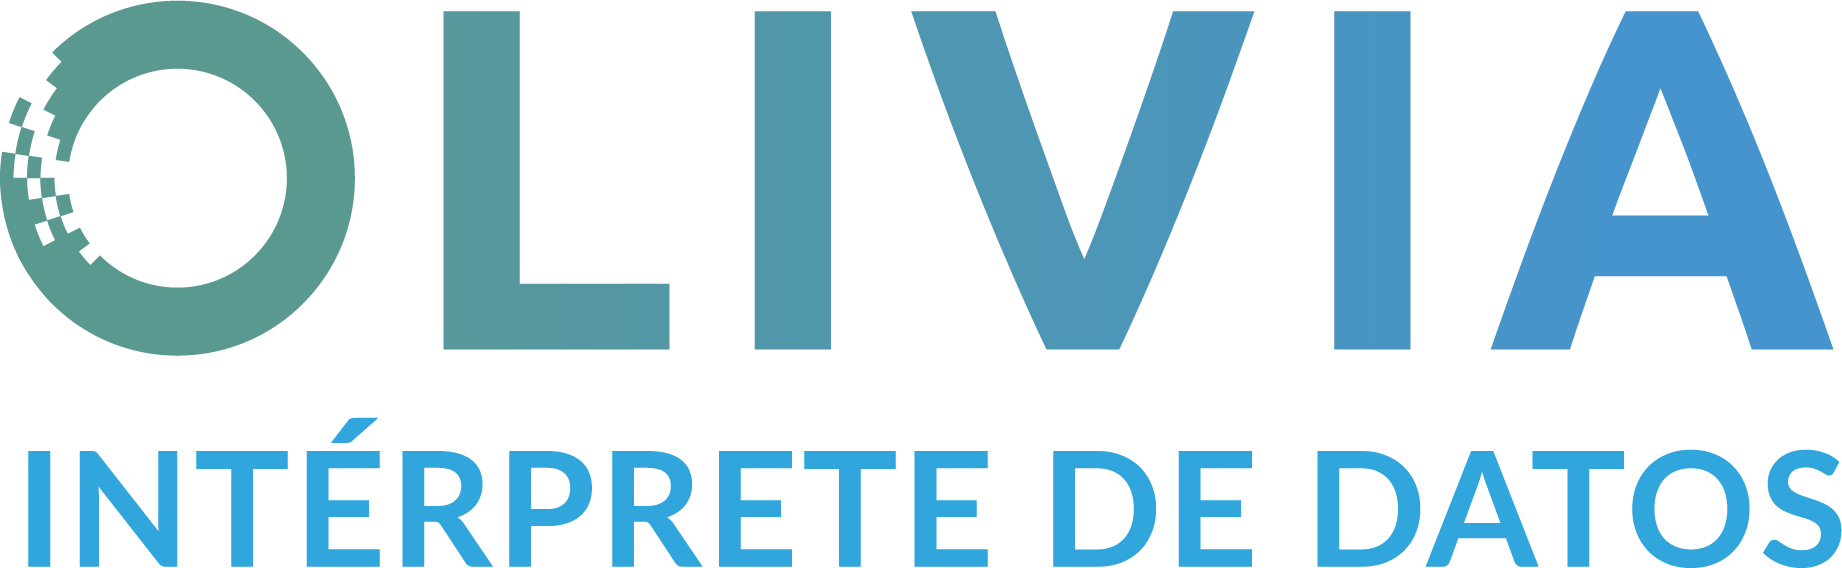 Olivia logo